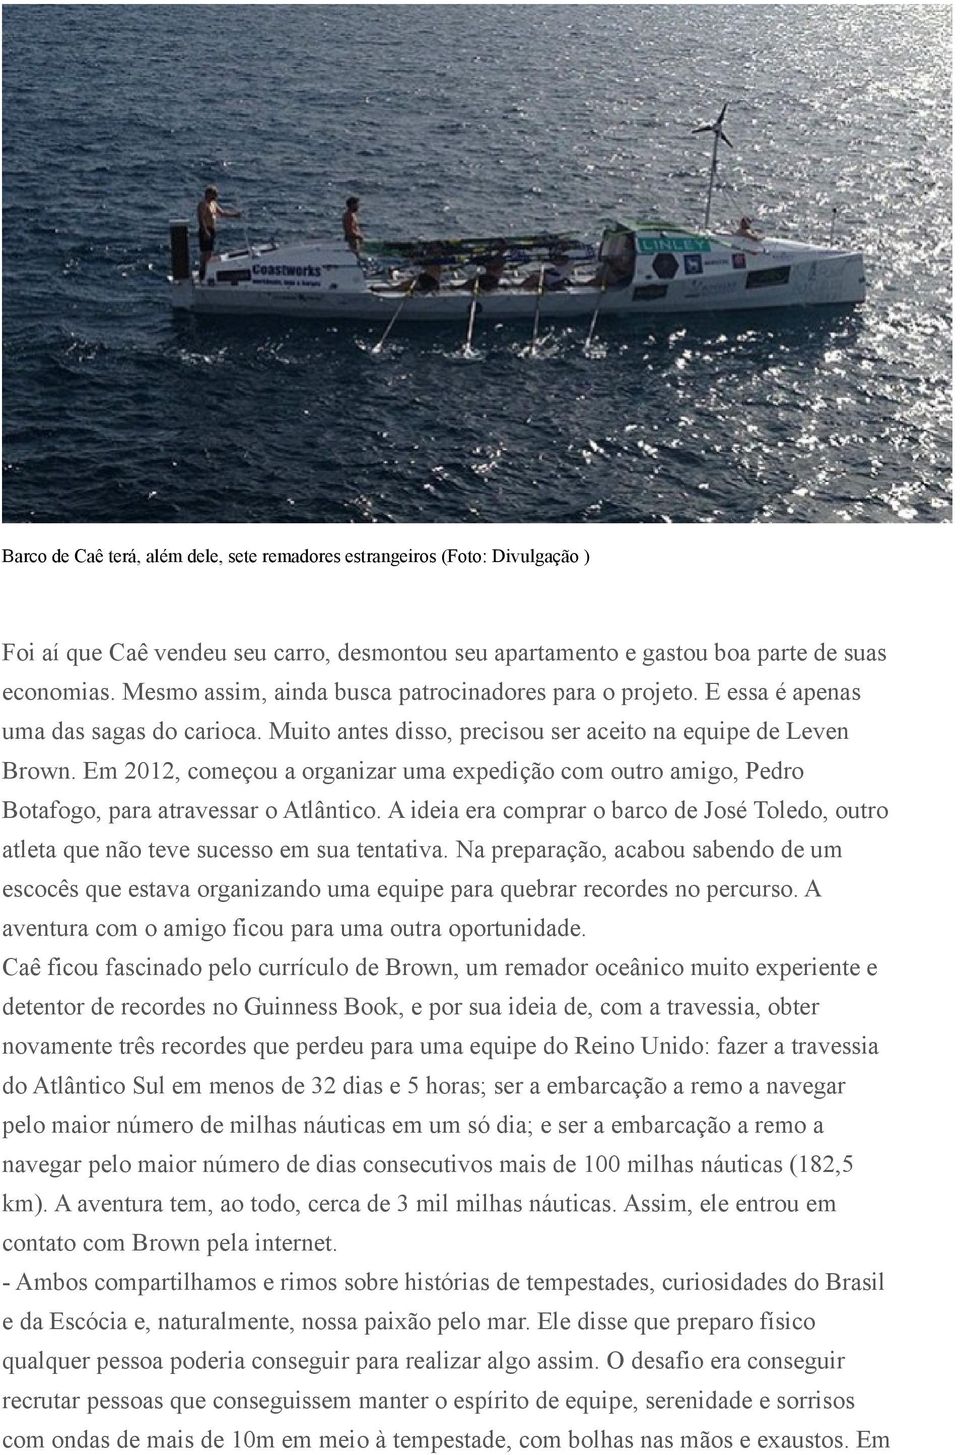 Em 2012, começou a organizar uma expedição com outro amigo, Pedro Botafogo, para atravessar o Atlântico. A ideia era comprar o barco de José Toledo, outro atleta que não teve sucesso em sua tentativa.